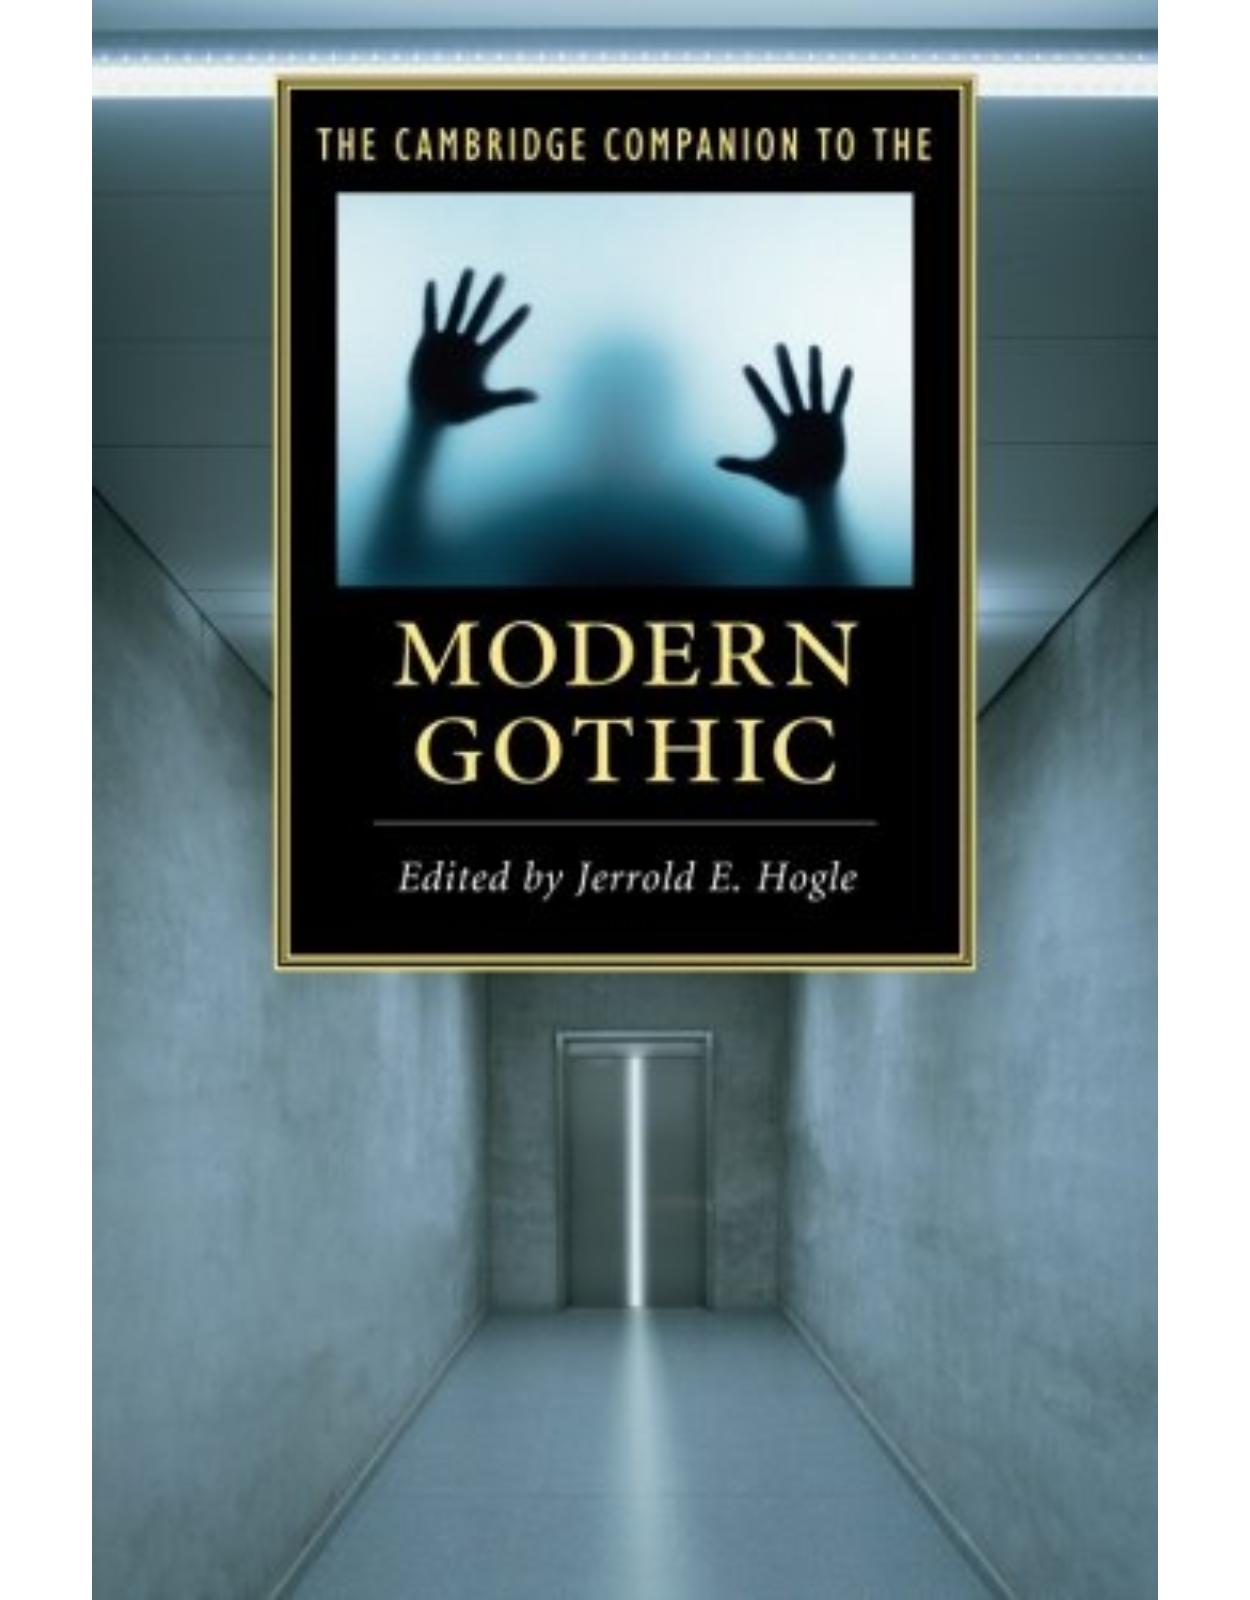 The Cambridge Companion to the Modern Gothic (Cambridge Companions to Literature)